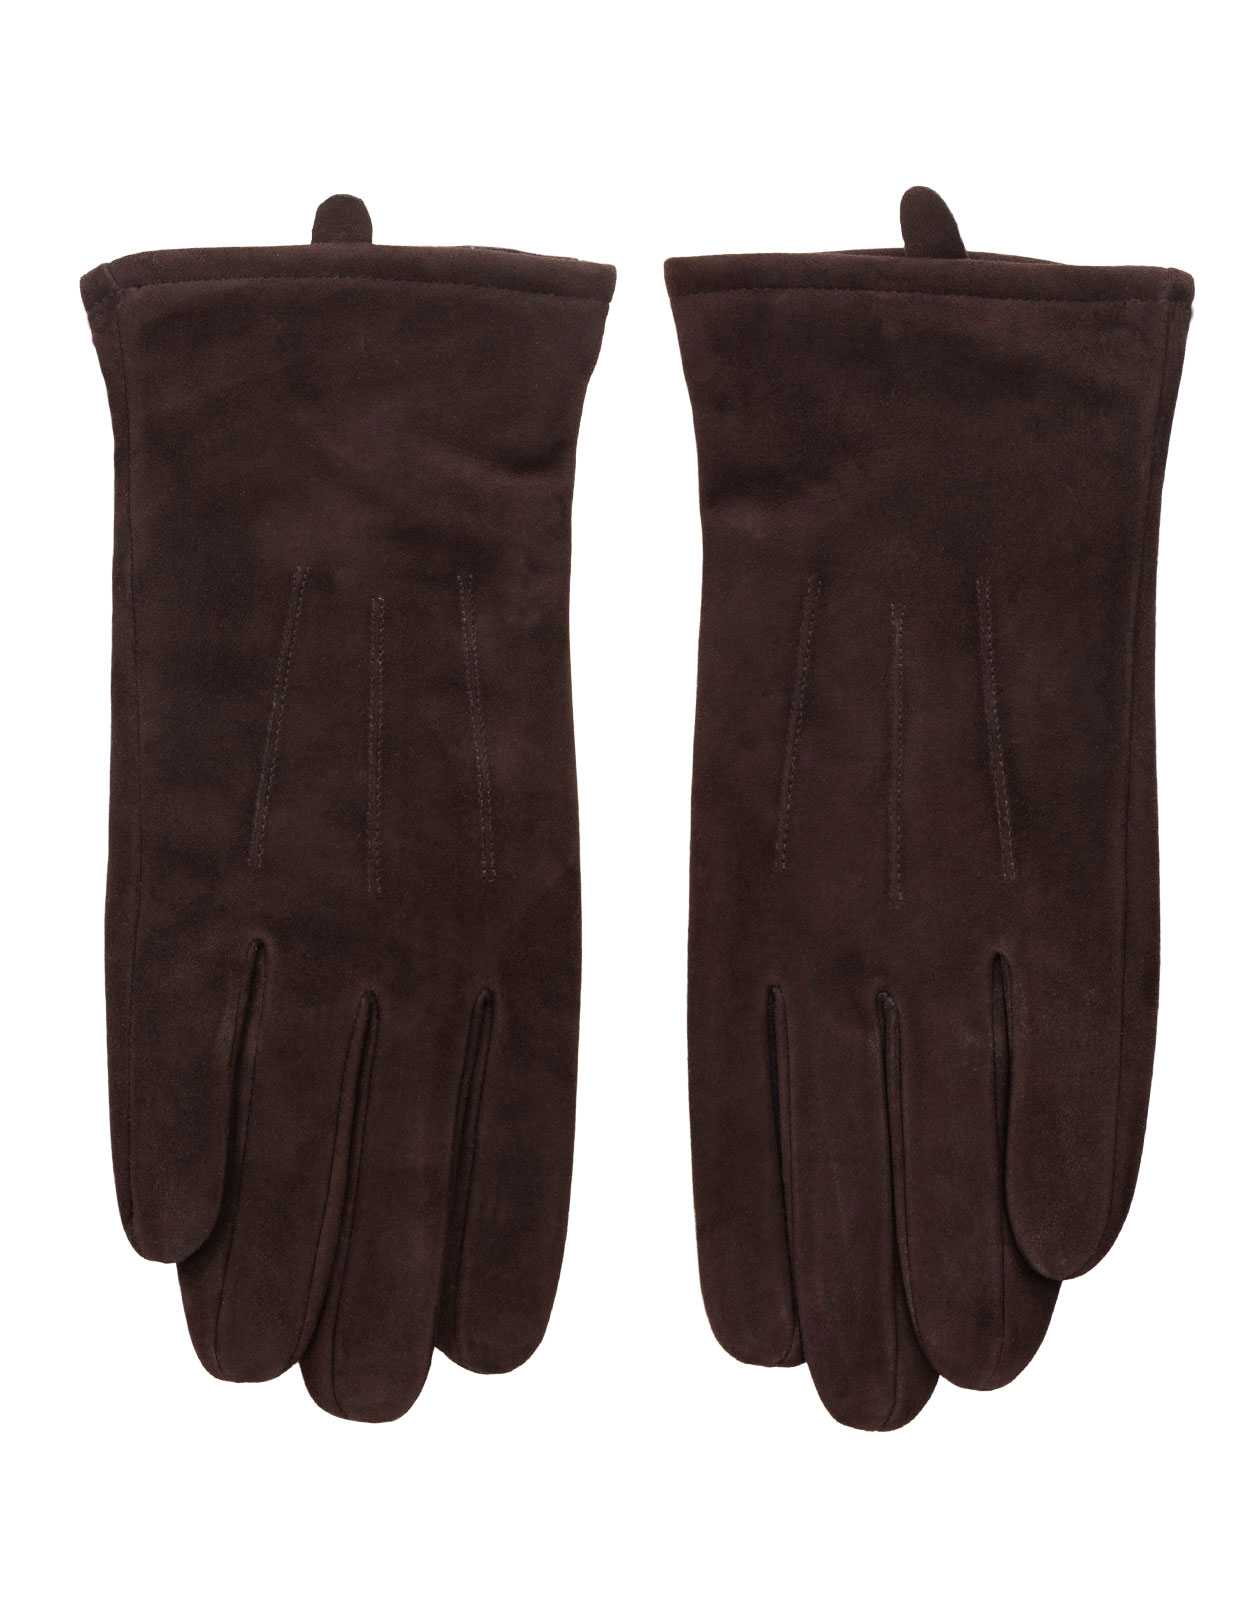 Classic Suede Gloves Dark Brown Stl 8.5